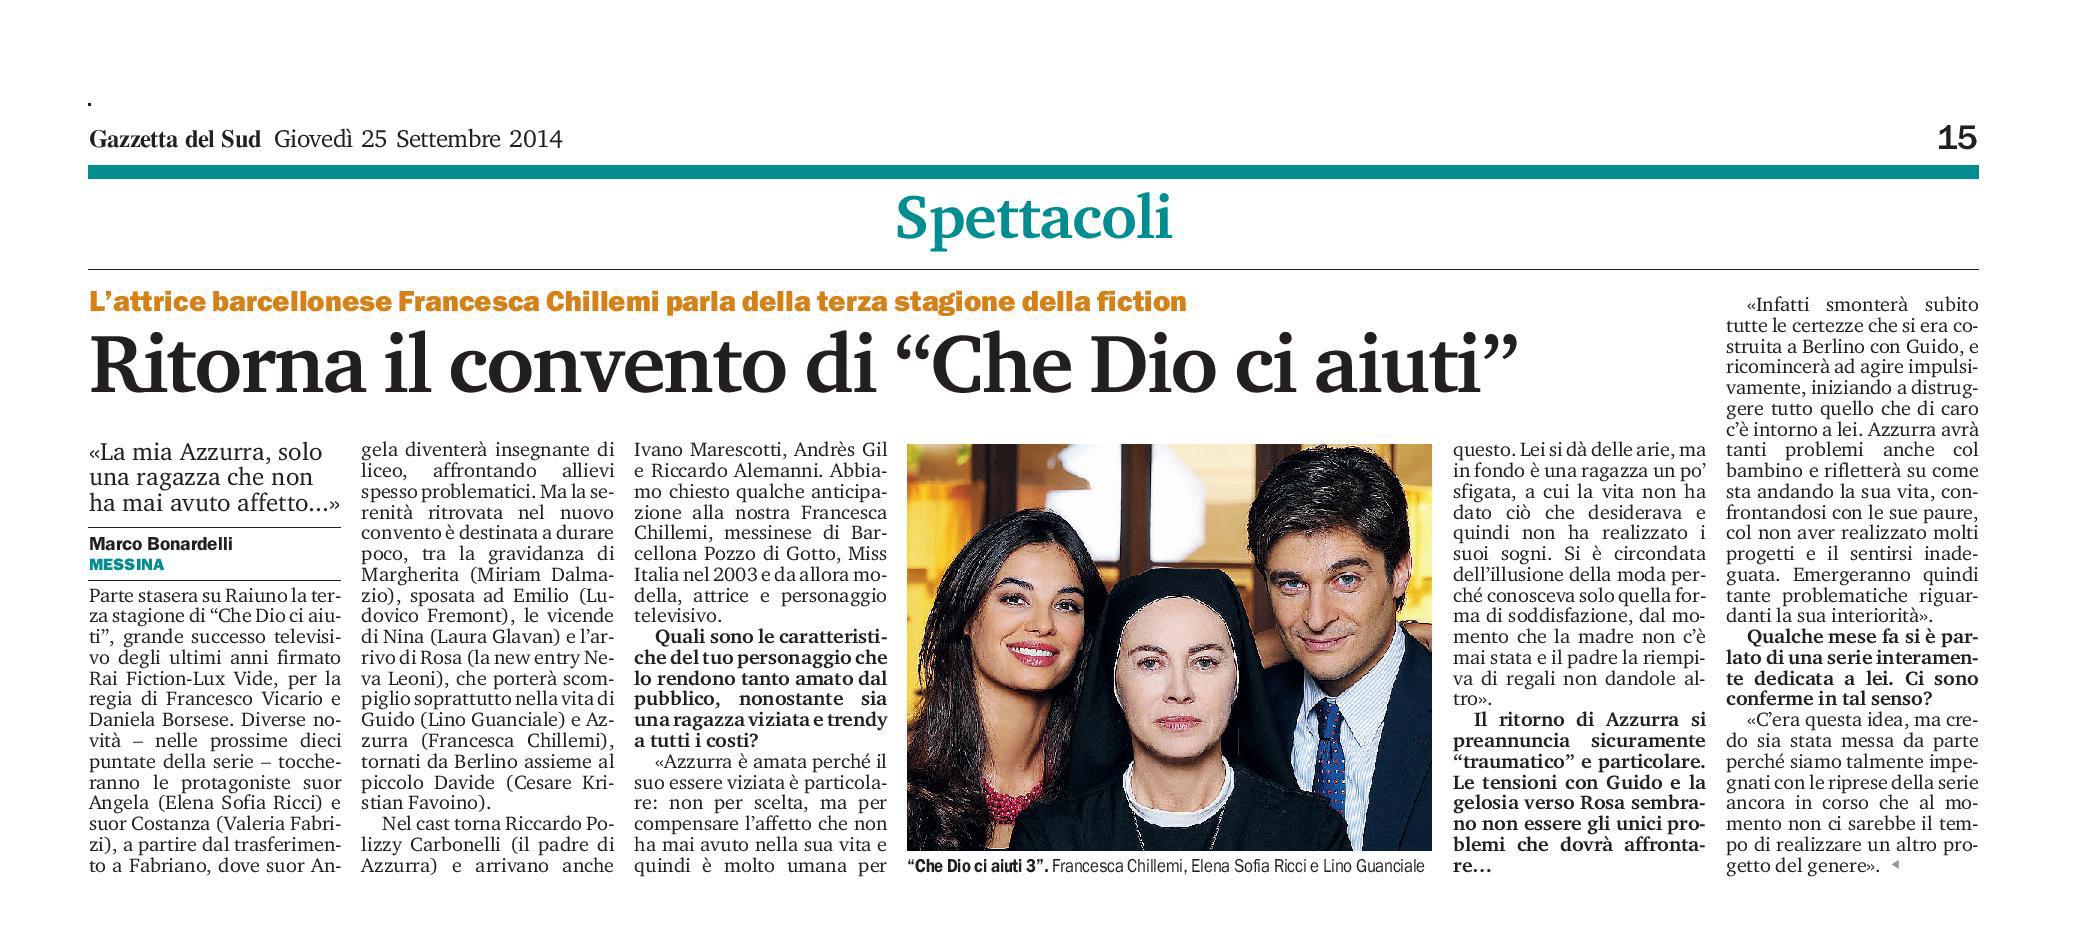 92 - Francesca Chillemi - Ritorna il convento di Che Dio ci aiuti - 25 settembre 2014-page-001.jpg